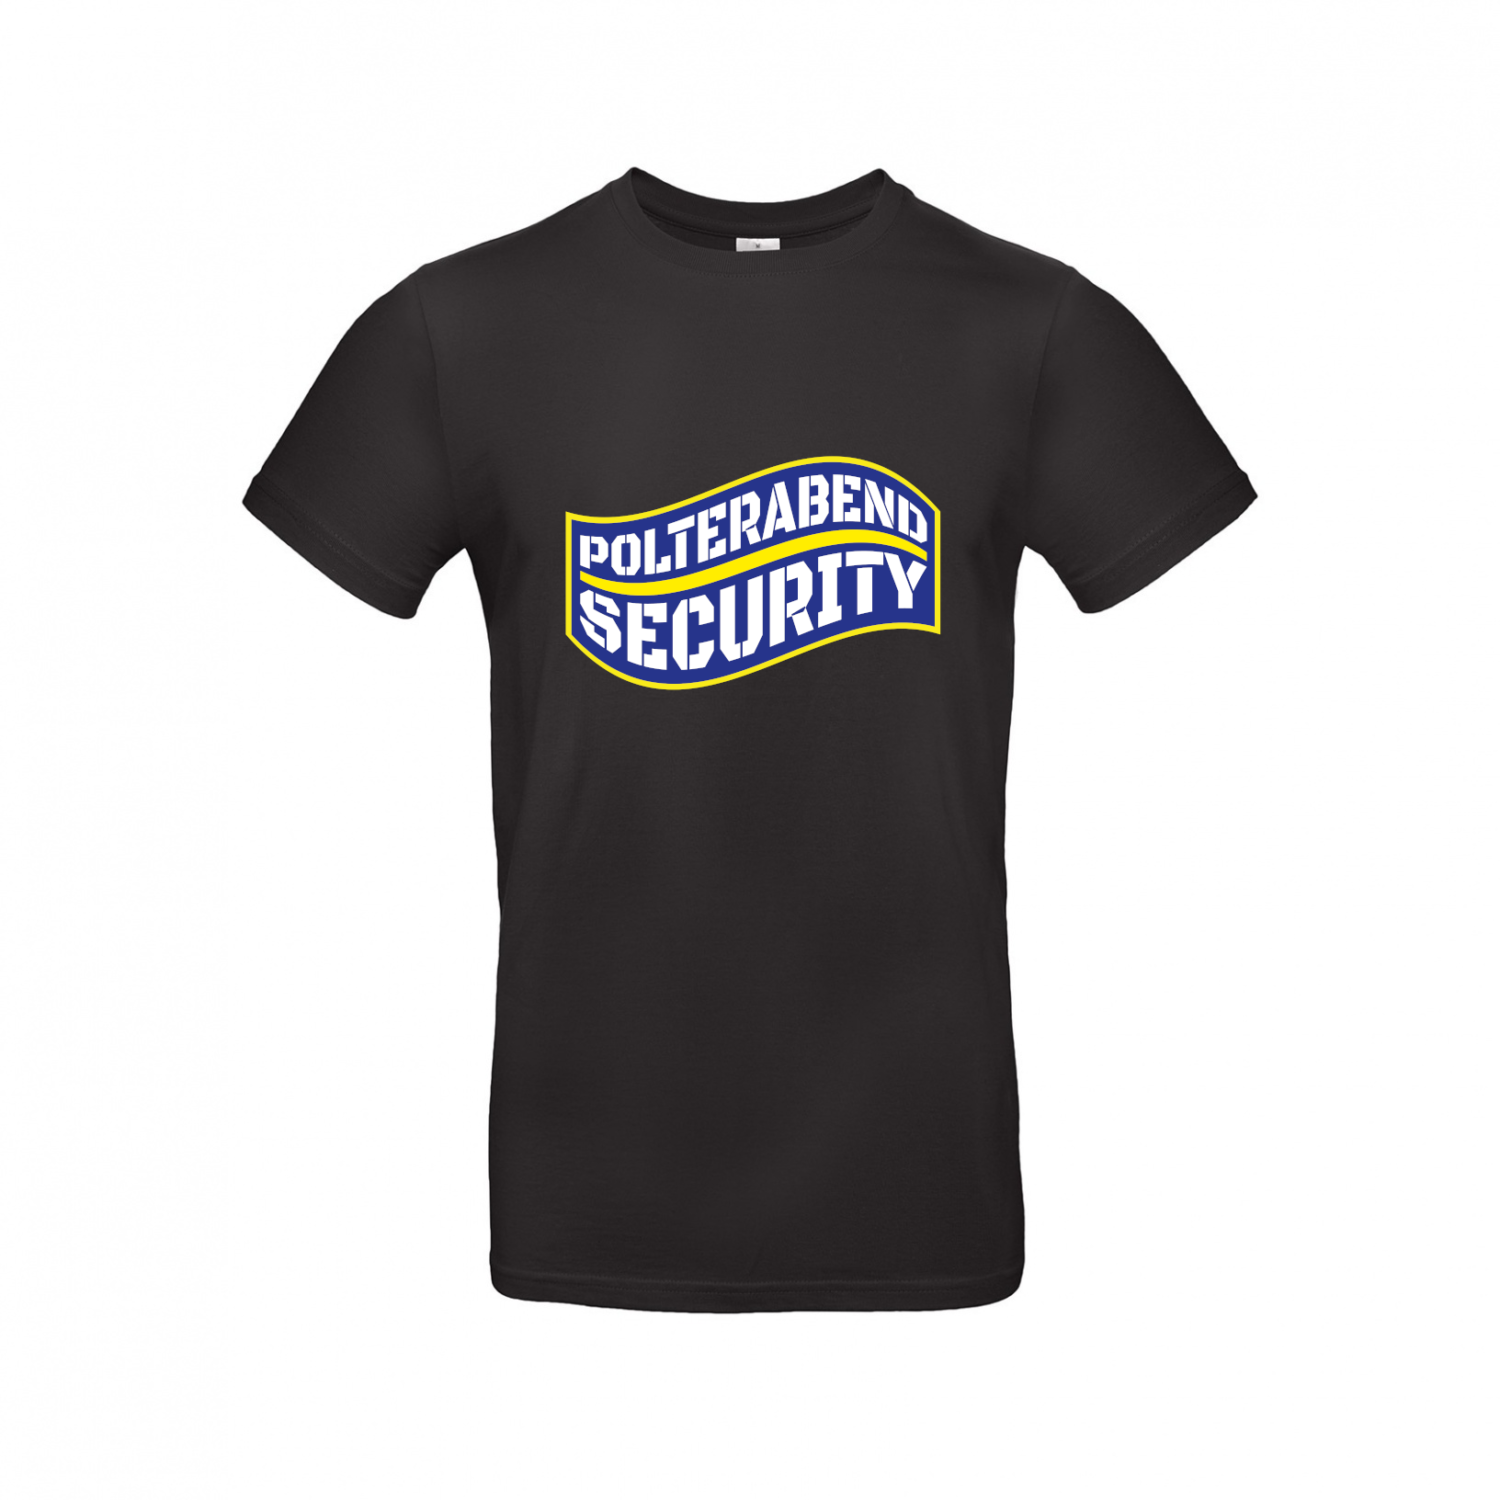 T-Shirt | Polterabend Security blau gelb - Herren T-Shirt